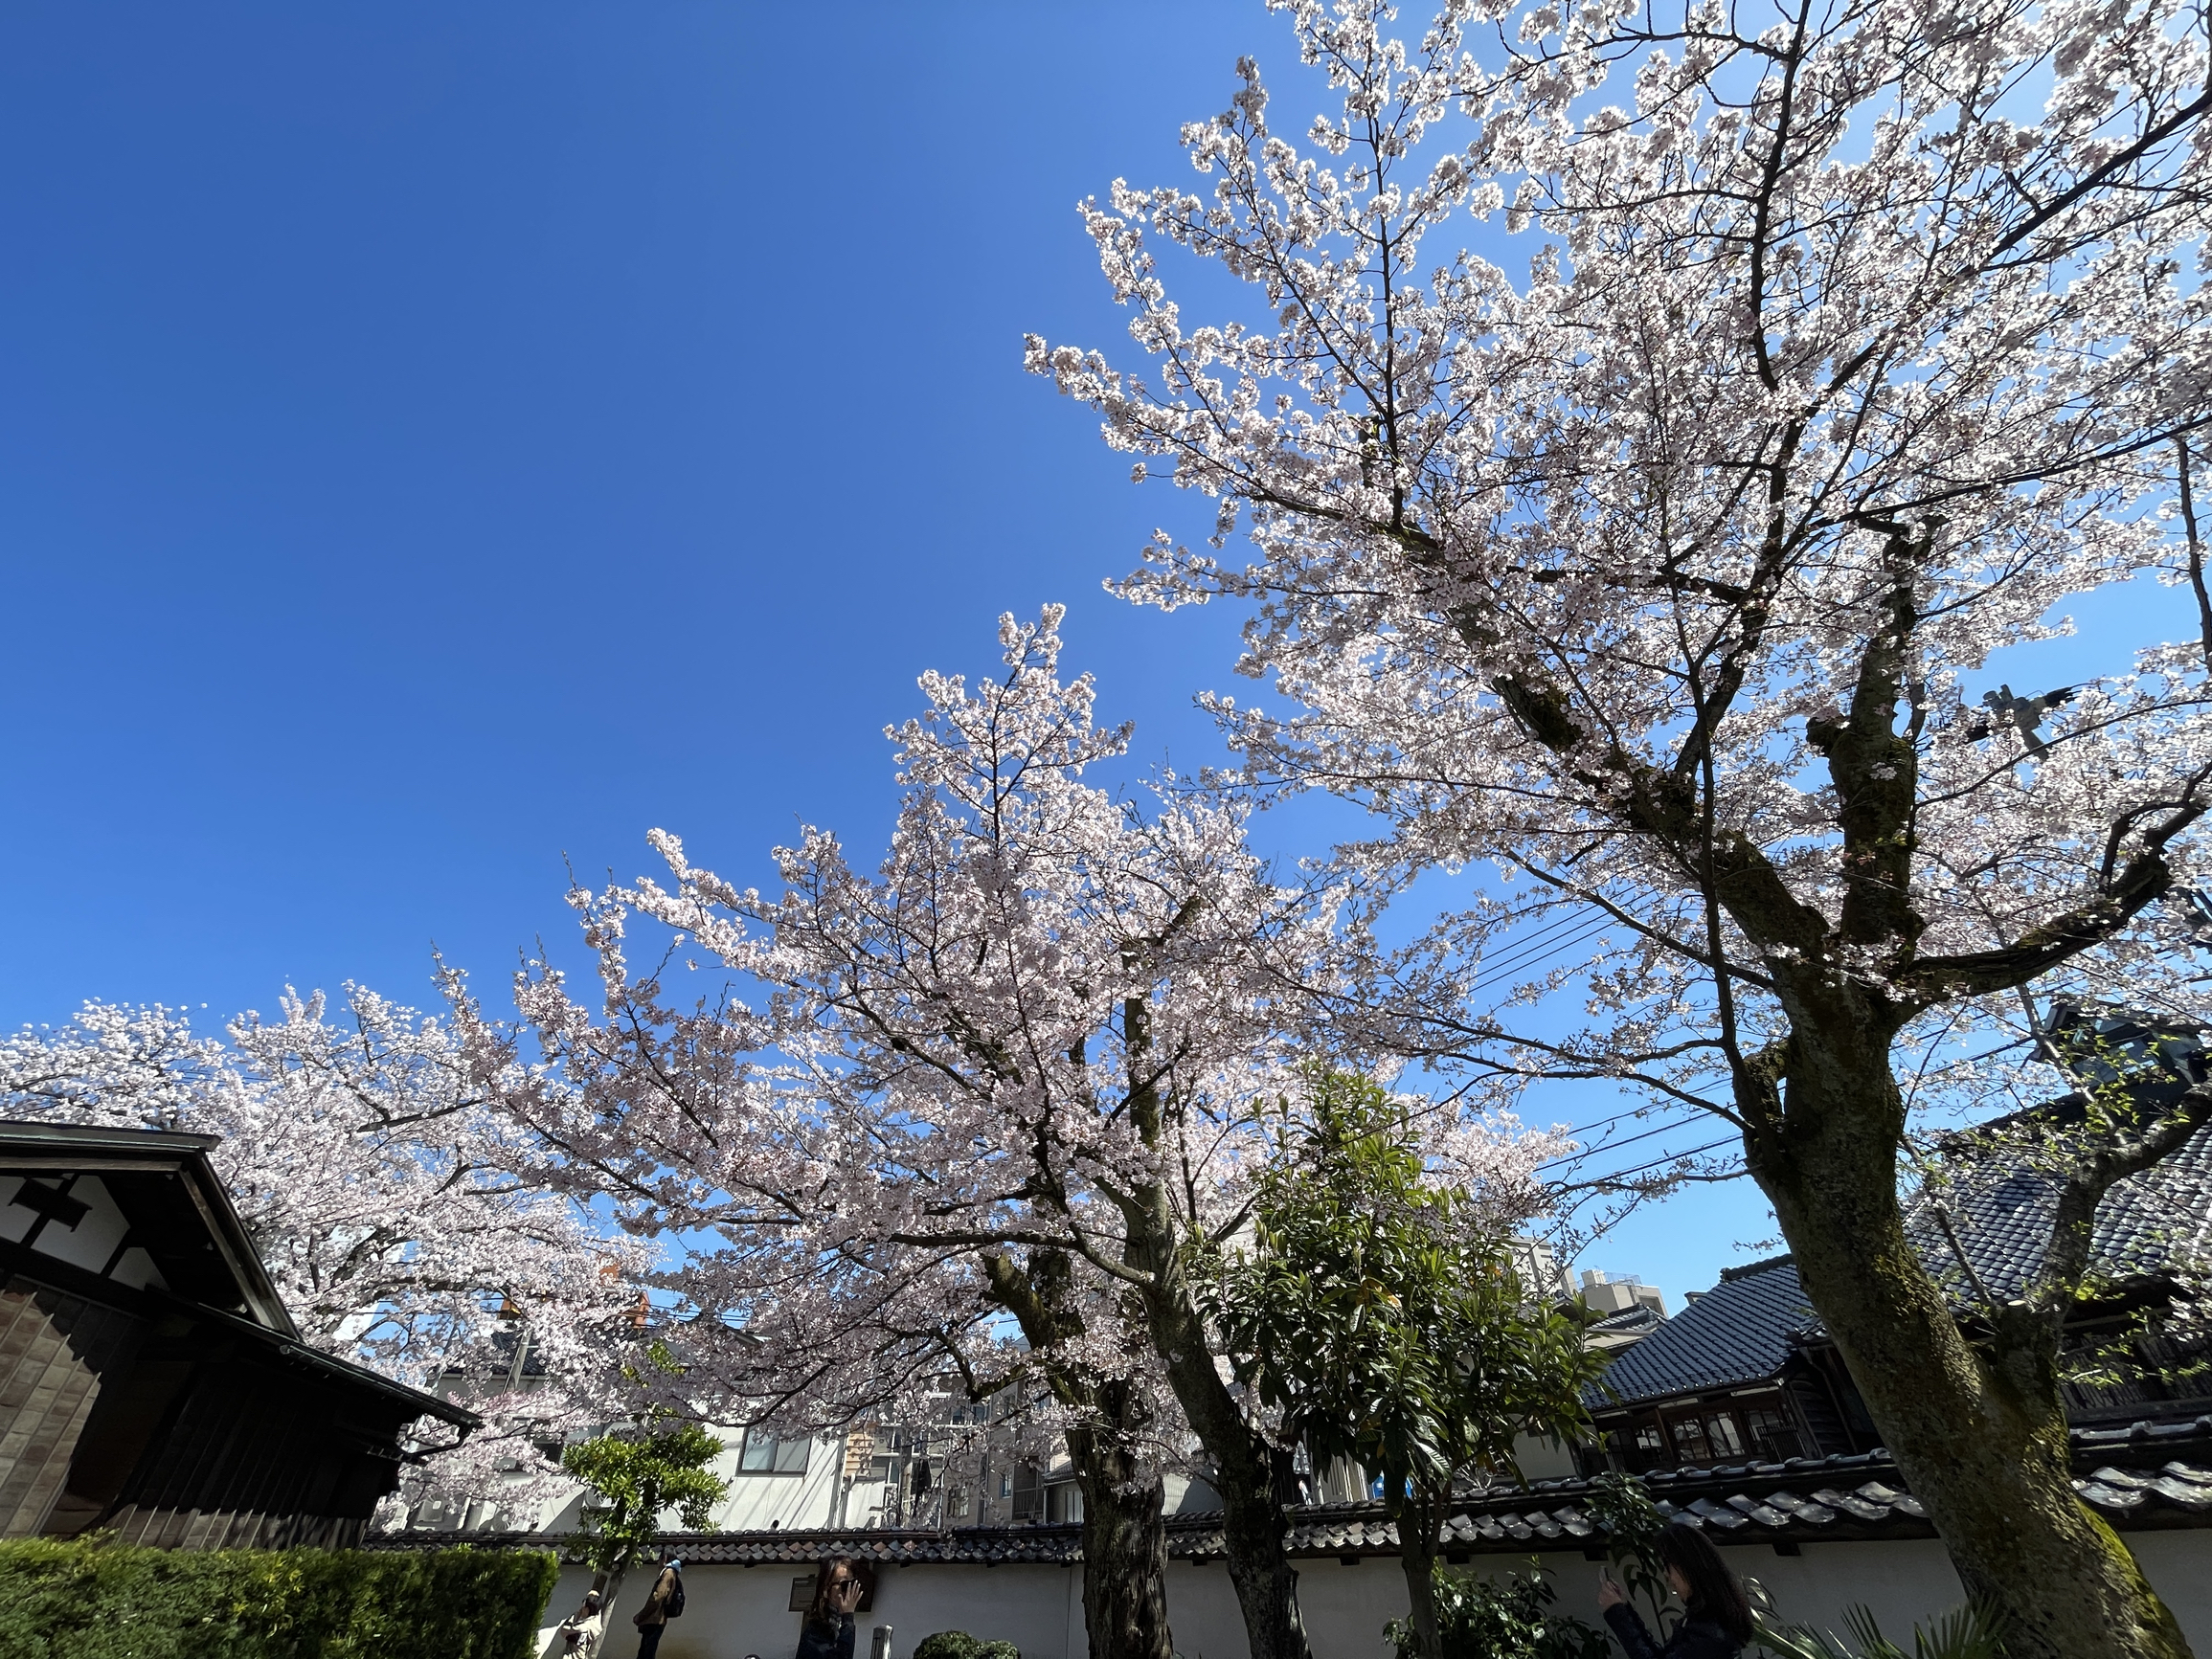 金泽城公园樱花开的特别美，今年最好的赏樱花时间是4🈷️5号到4🈷️11日，今天晴空万里，樱花盛开的精